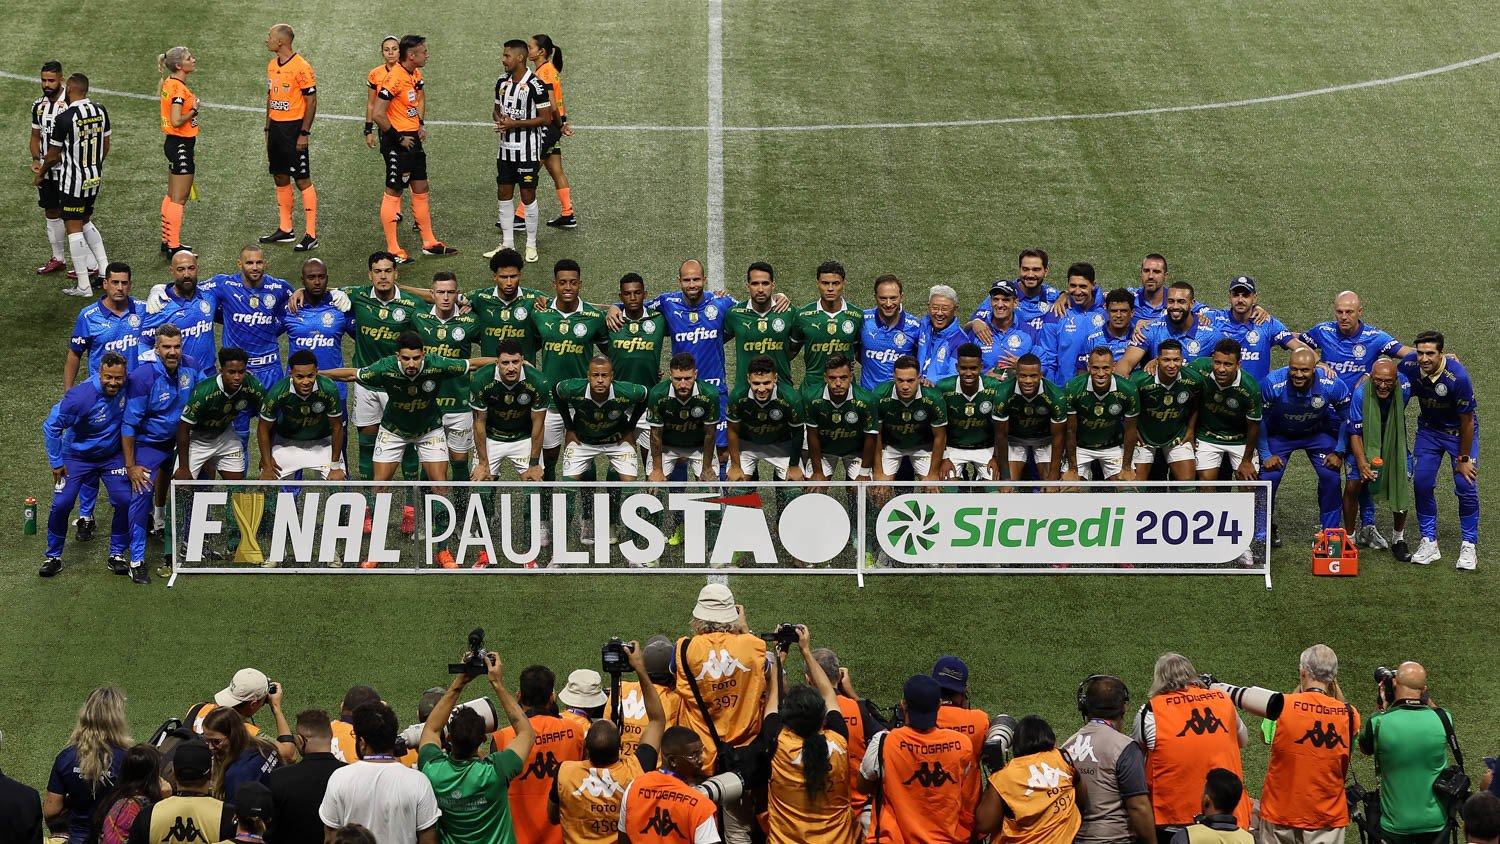 Palmeiras Paulistão